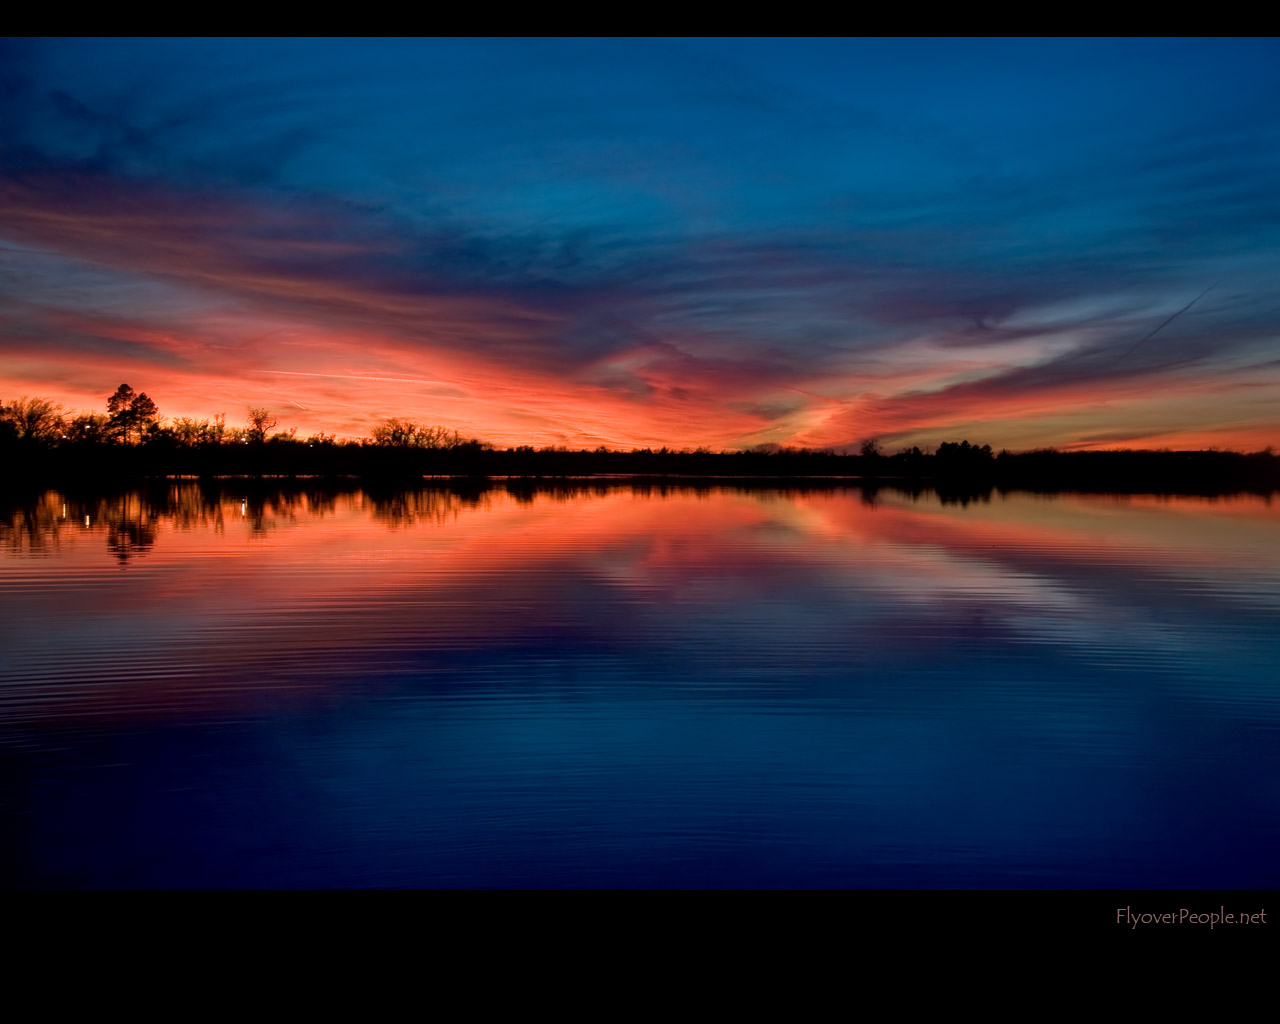 Evening Calm Sunset at Herington Lake 1280x1024